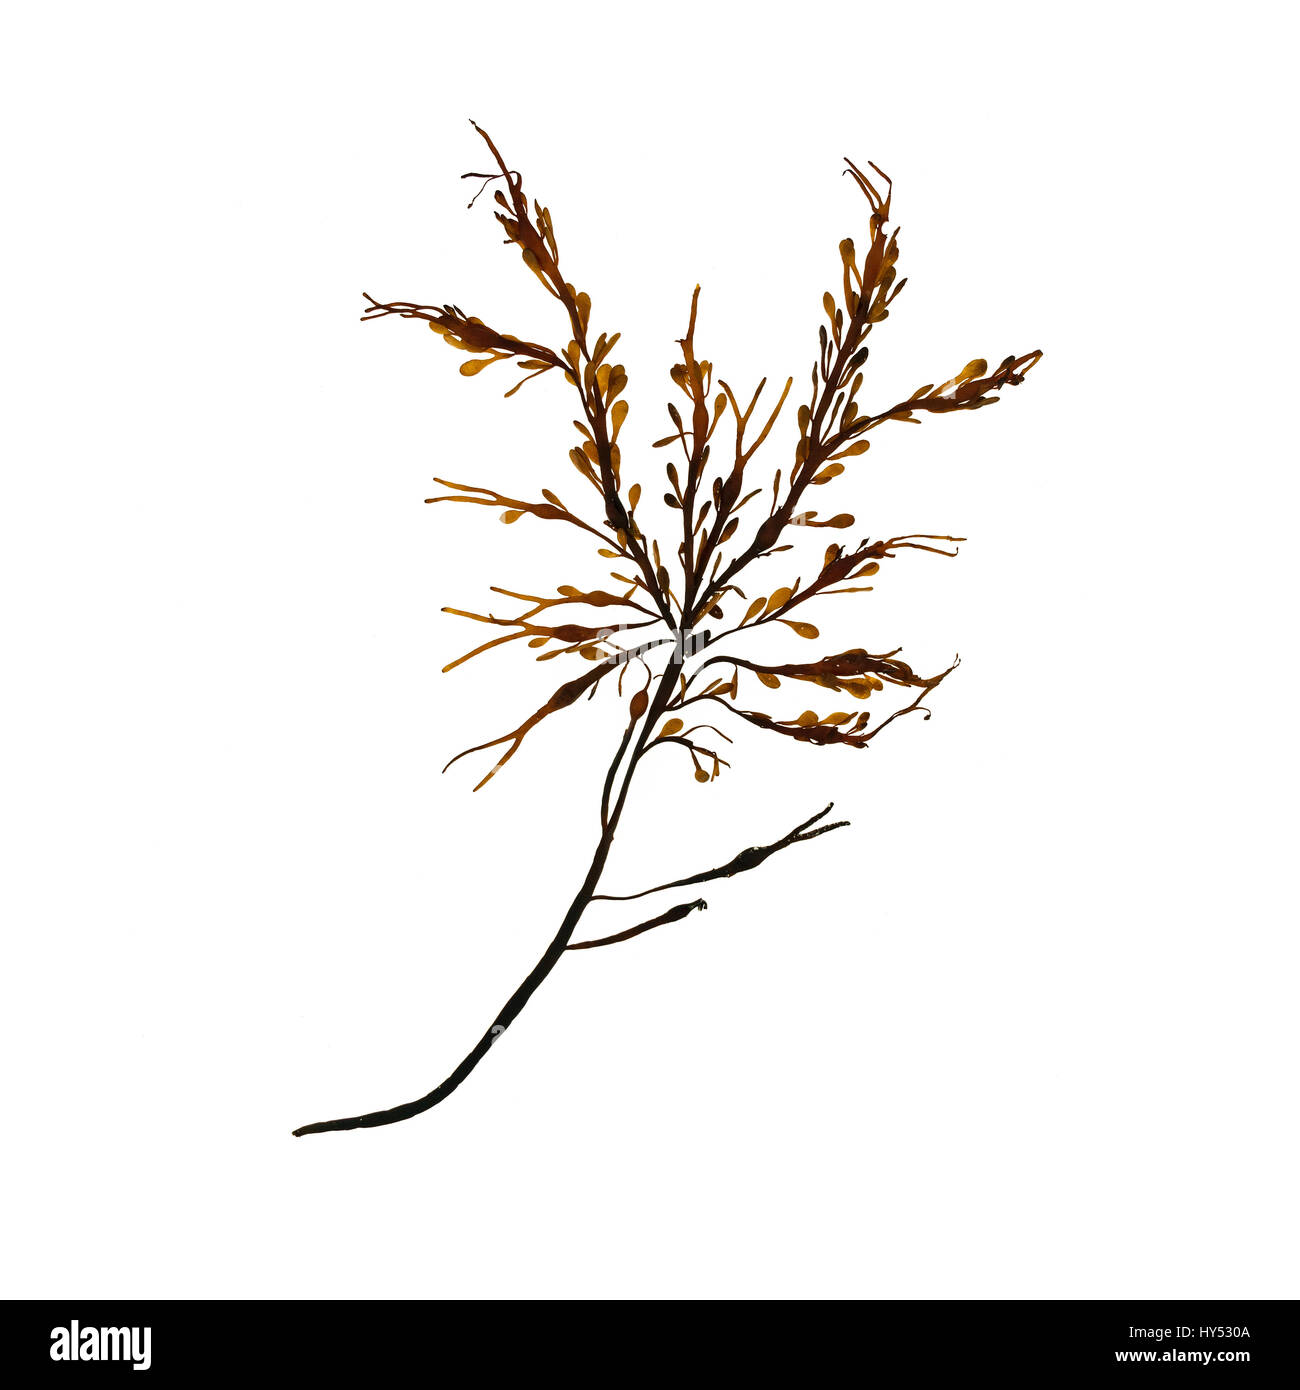 Ascophyllum nodosum (Rockweed or Knotted Wrack) photographed on a light box/white background. Stock Photo